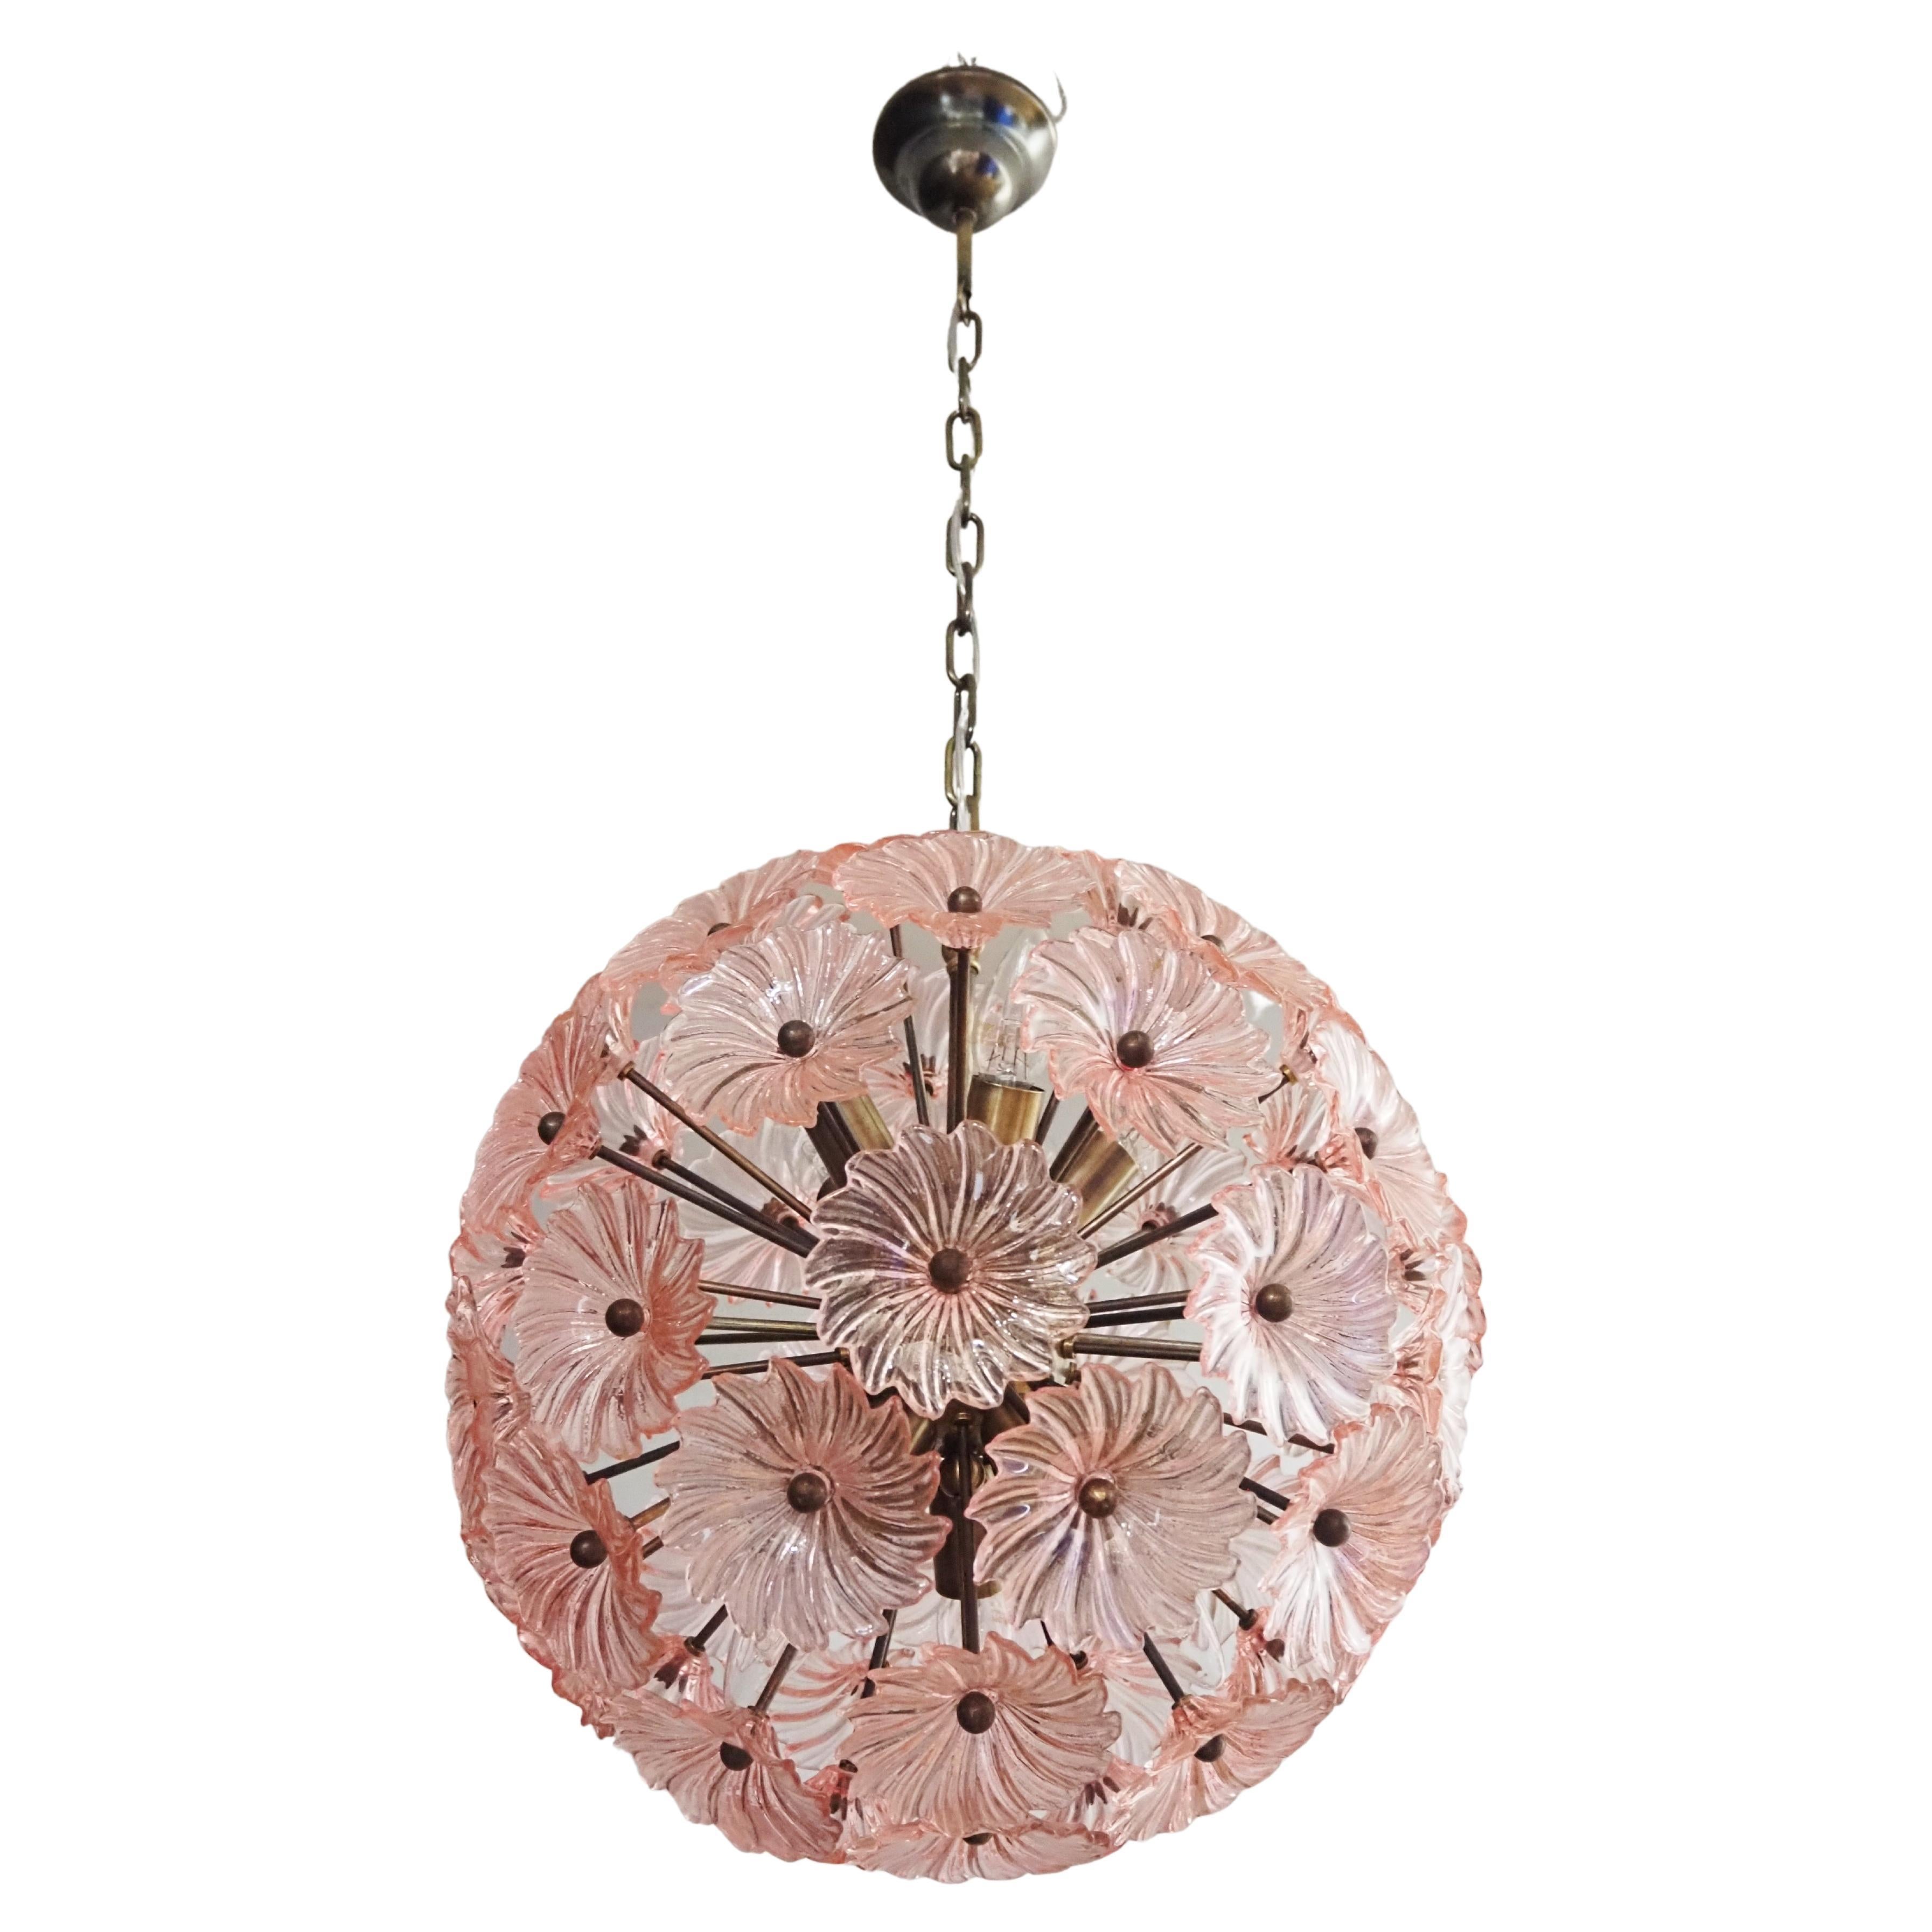 Vintage Sputnik Italian crystal chandelier - 51 Daisy PINK glasses For Sale